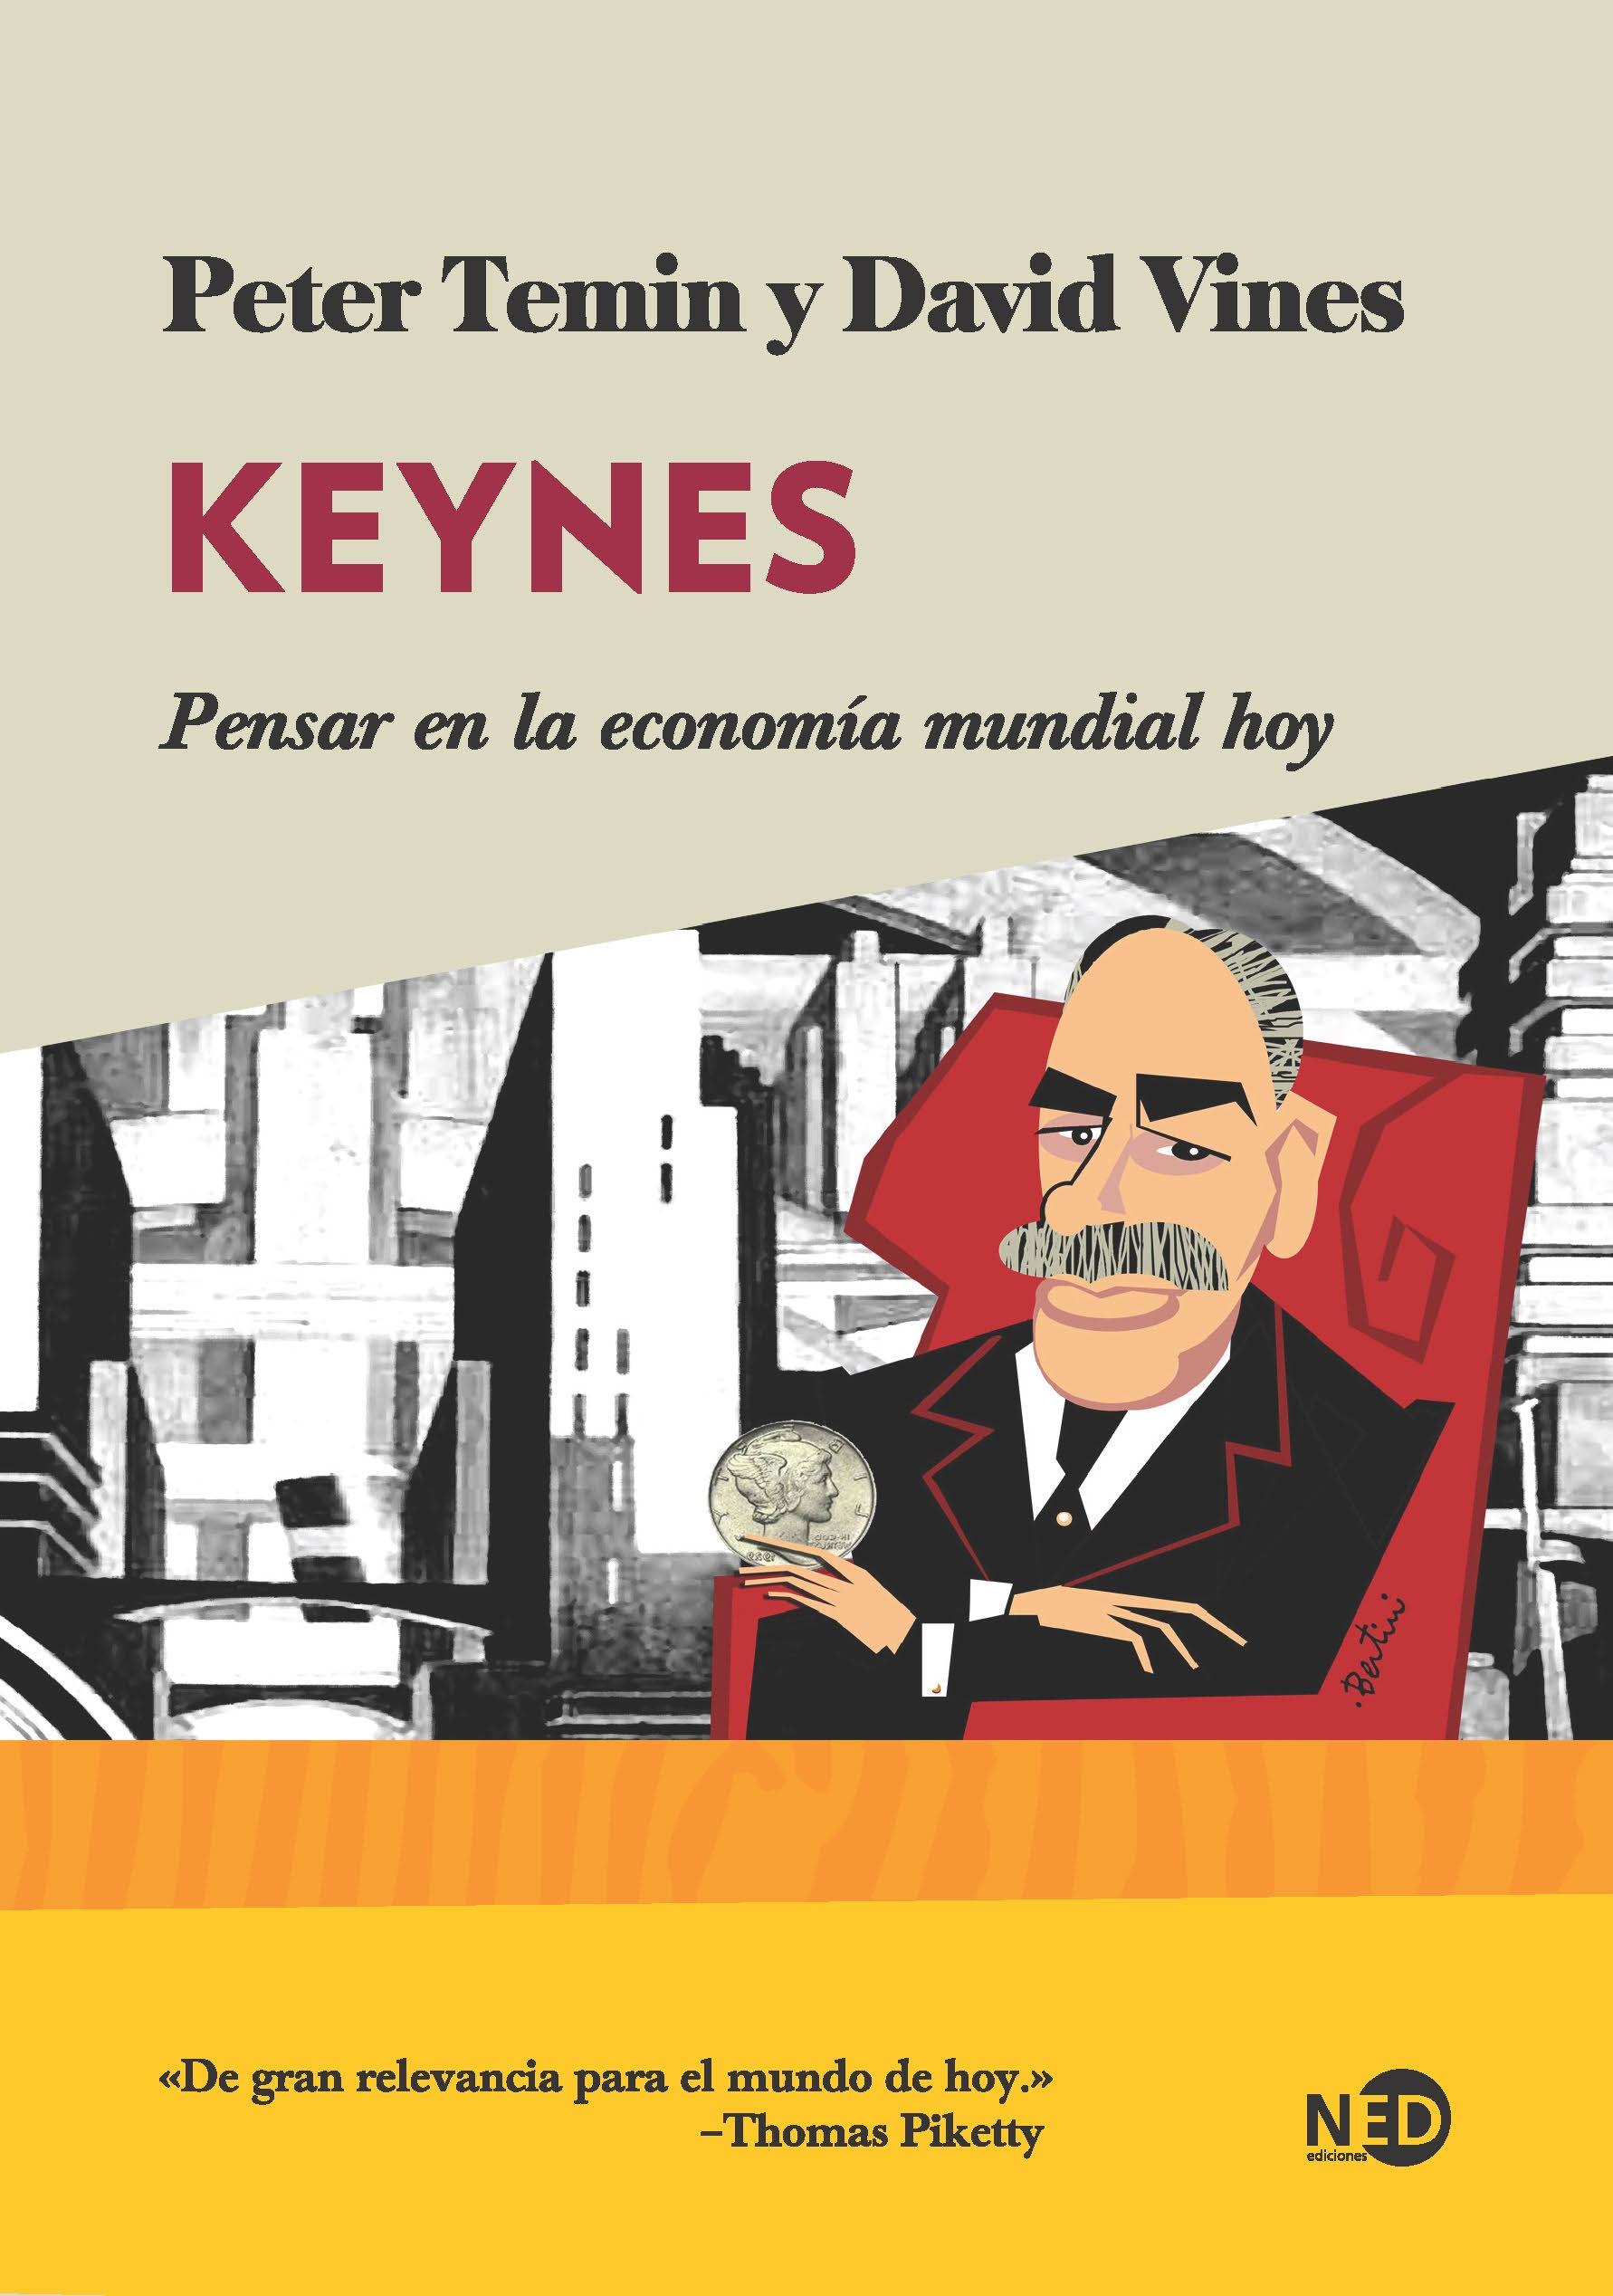 Keynes "Pensar en la economía mundial hoy"